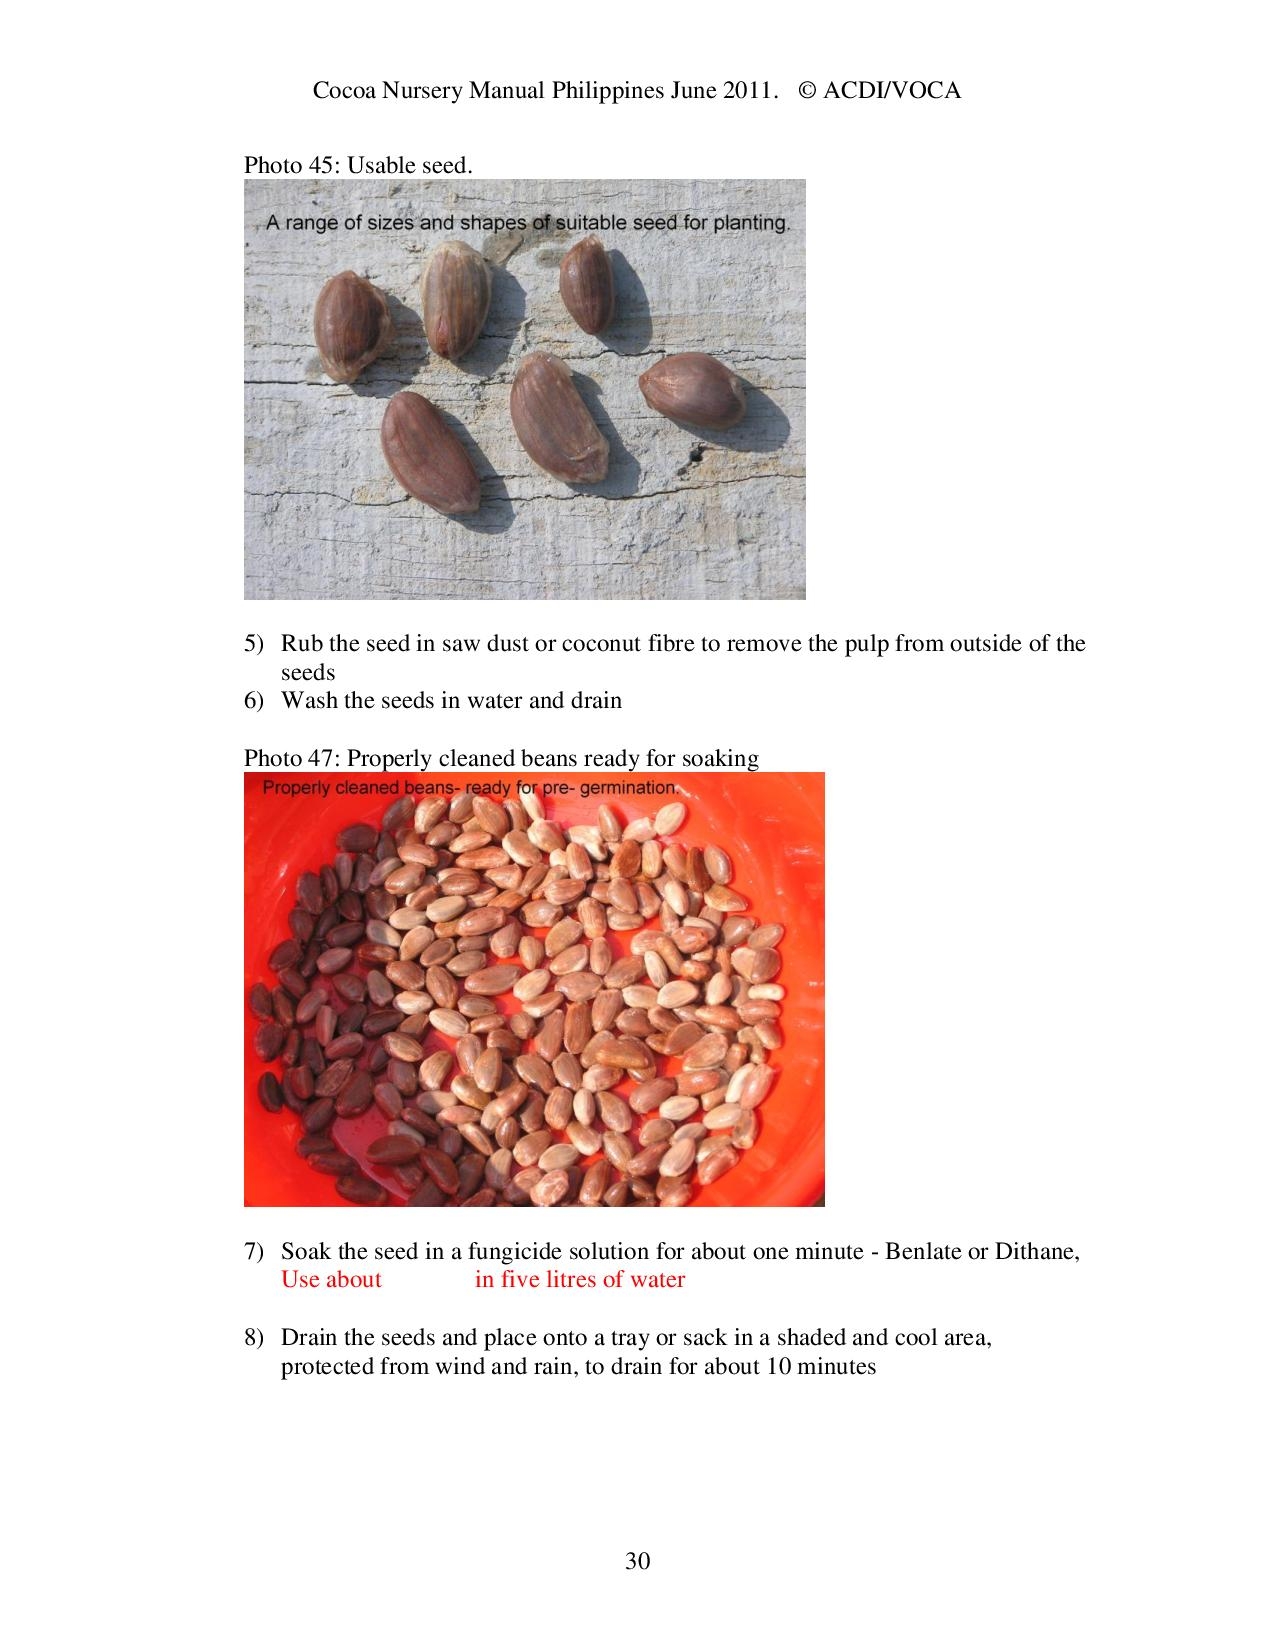 Cocoa-Nursery-Manual-2011_acdi-voca-page-030